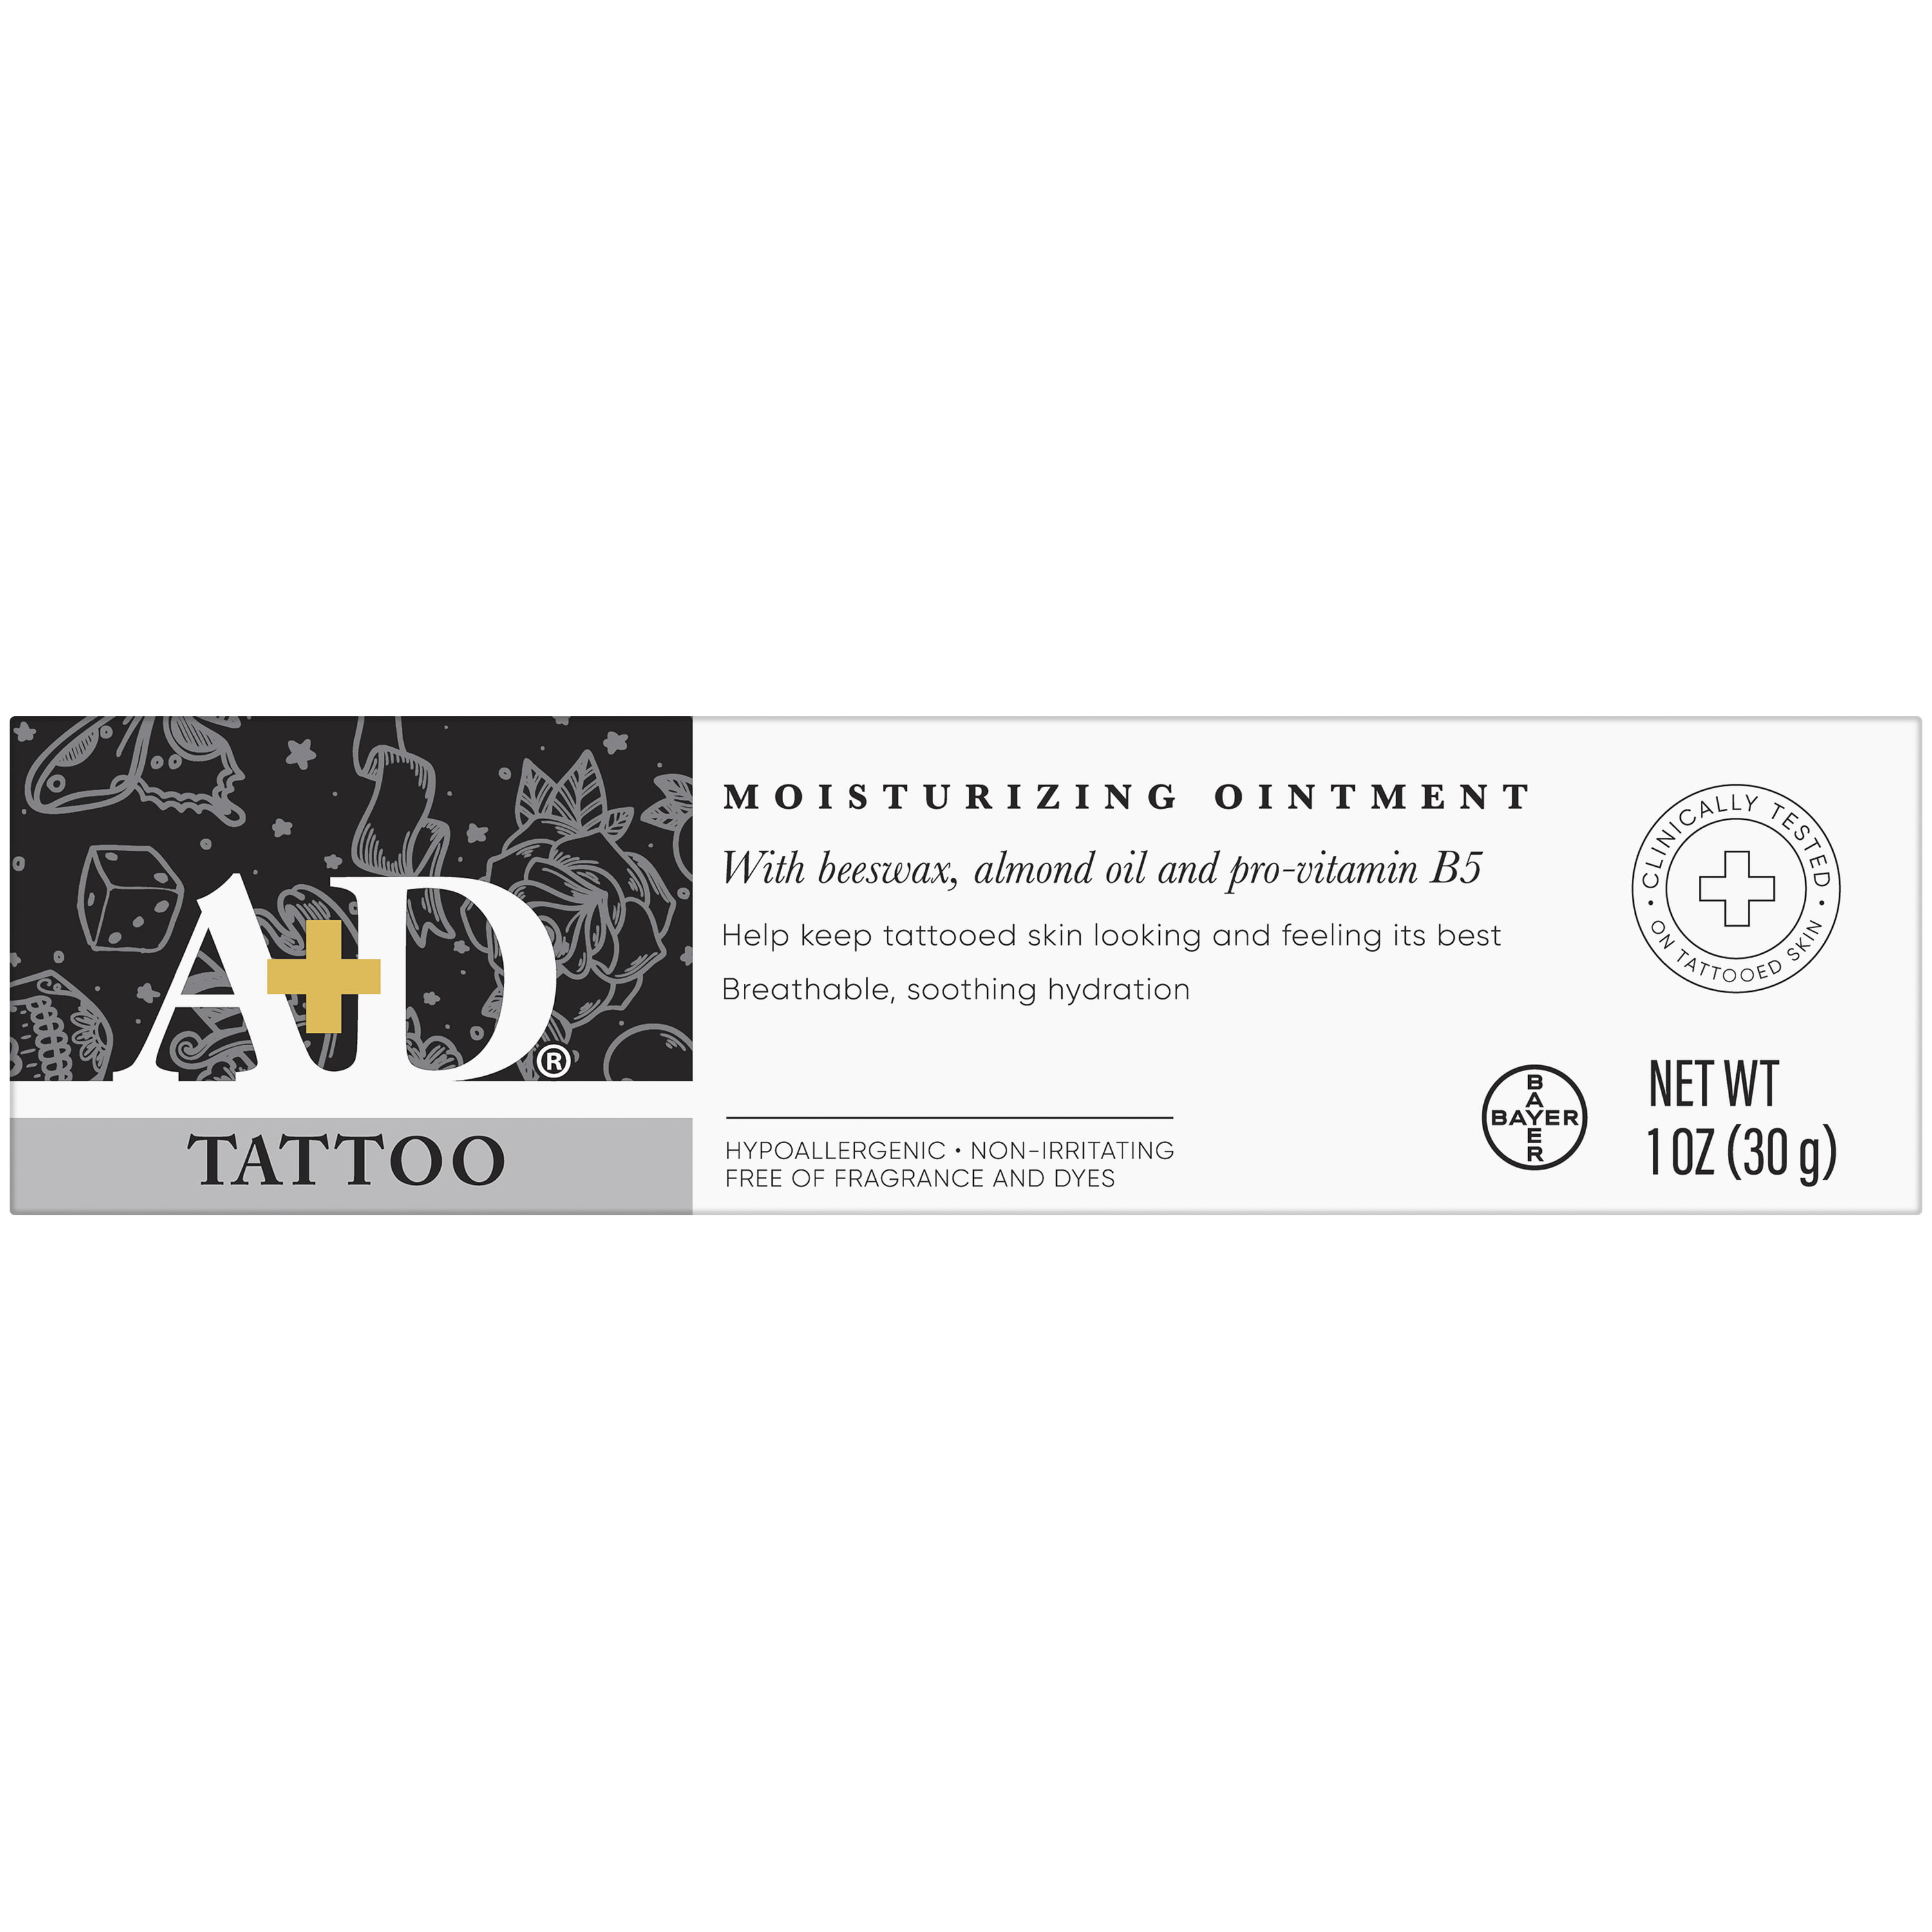 A&D Tattoo Moisturizing Ointment, 3.5 oz - Harris Teeter